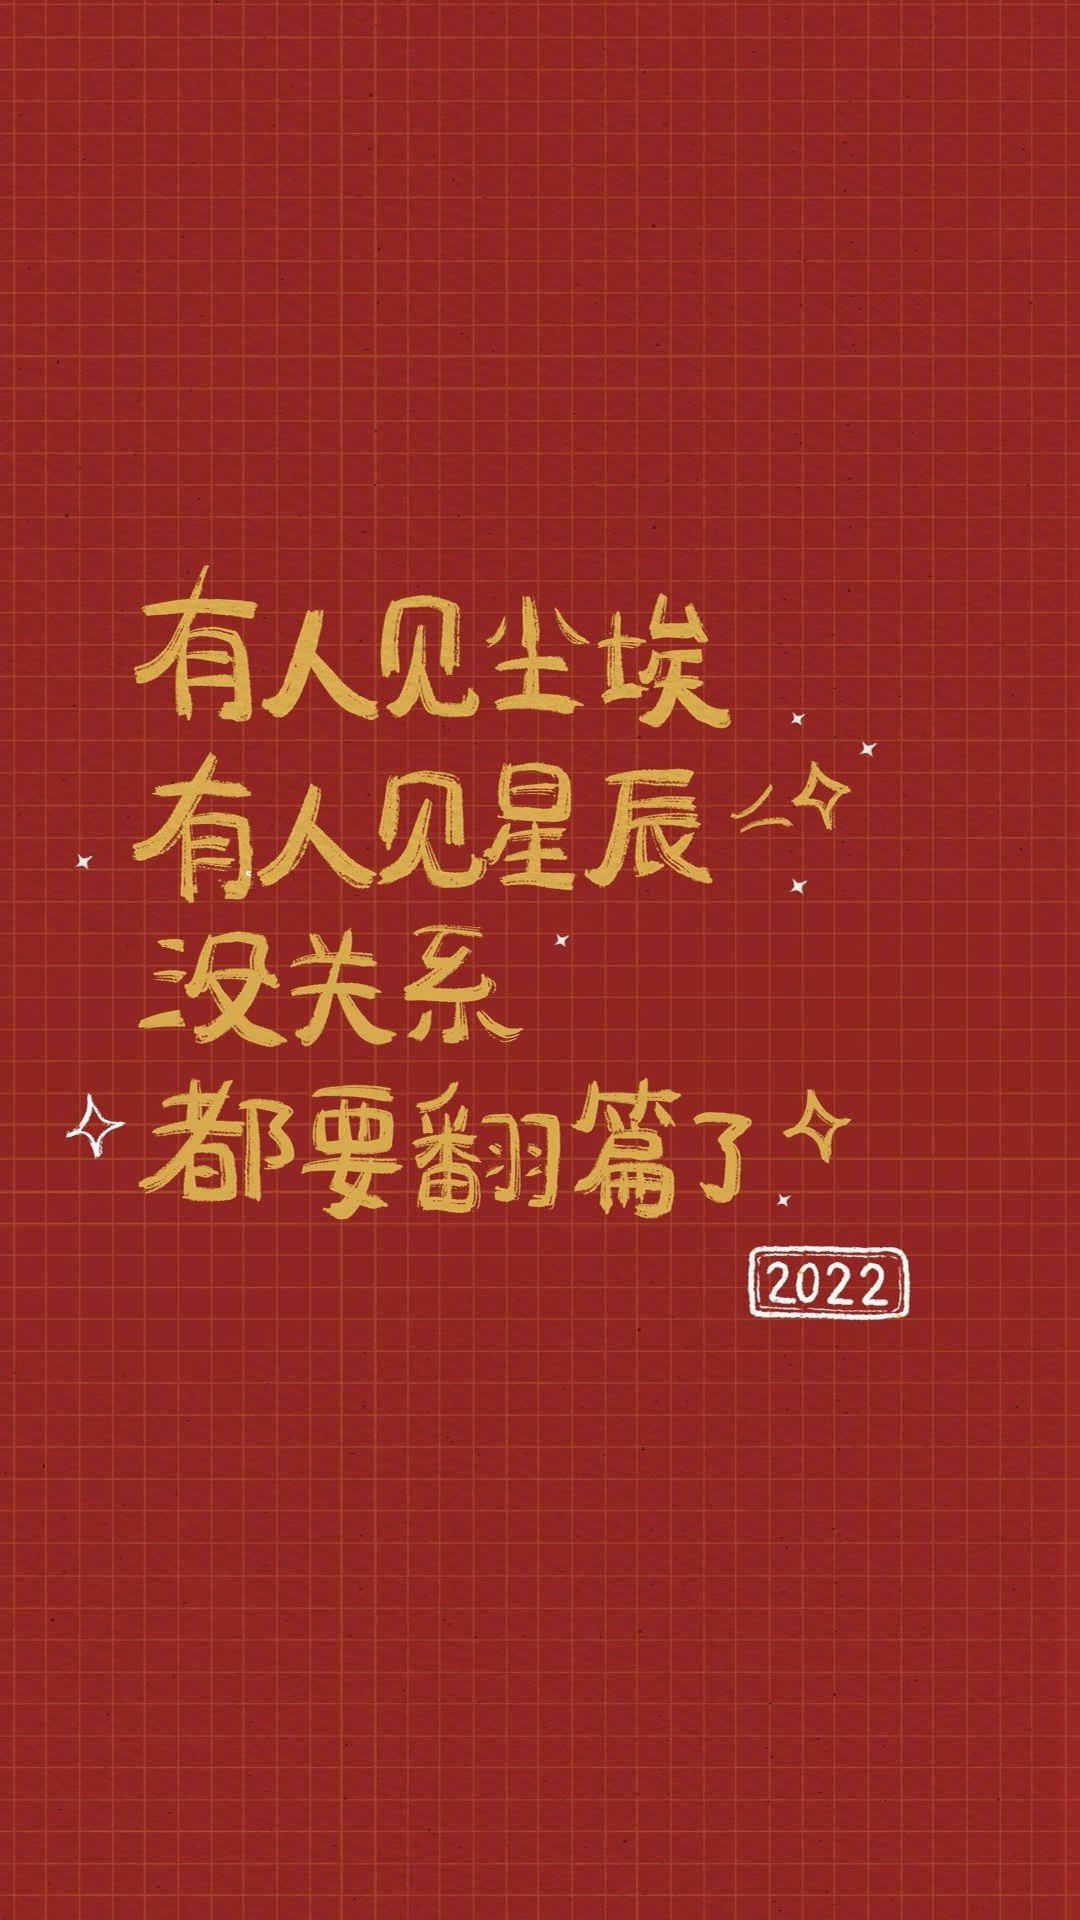 2022新年快乐手机壁纸-